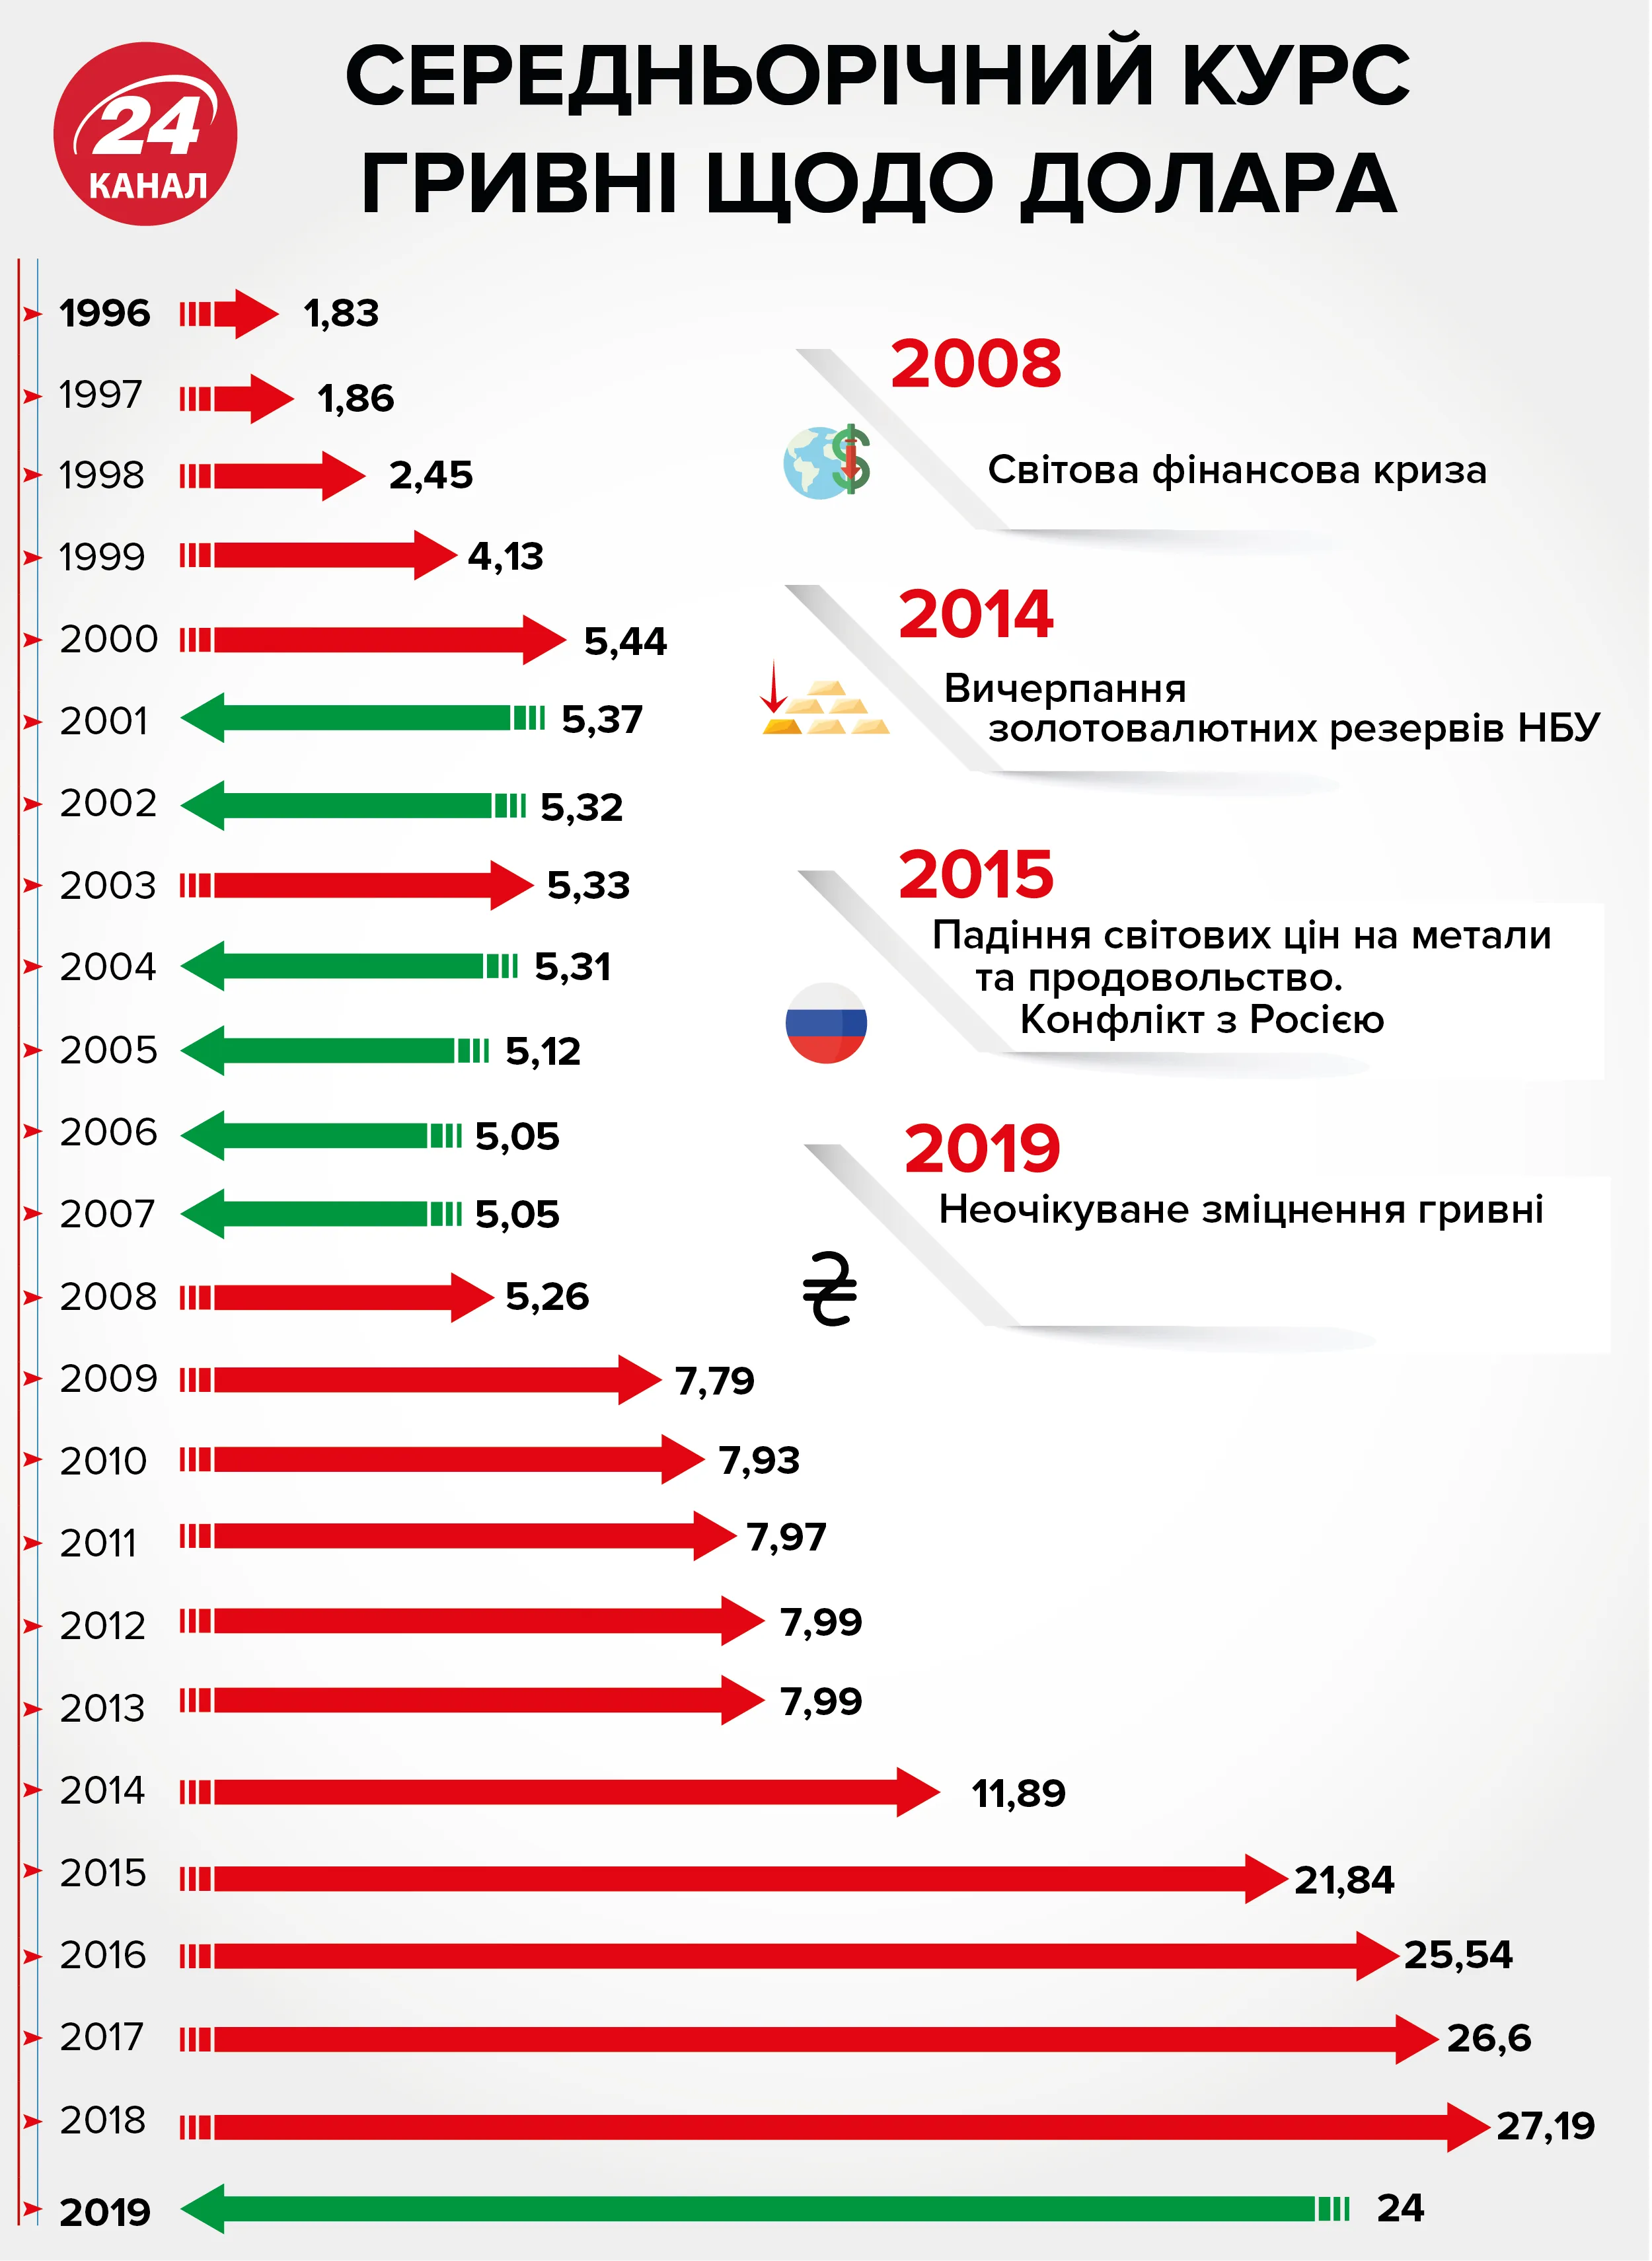 курс валют в независимой Украине, курс валют с 1996 по 2019 годы